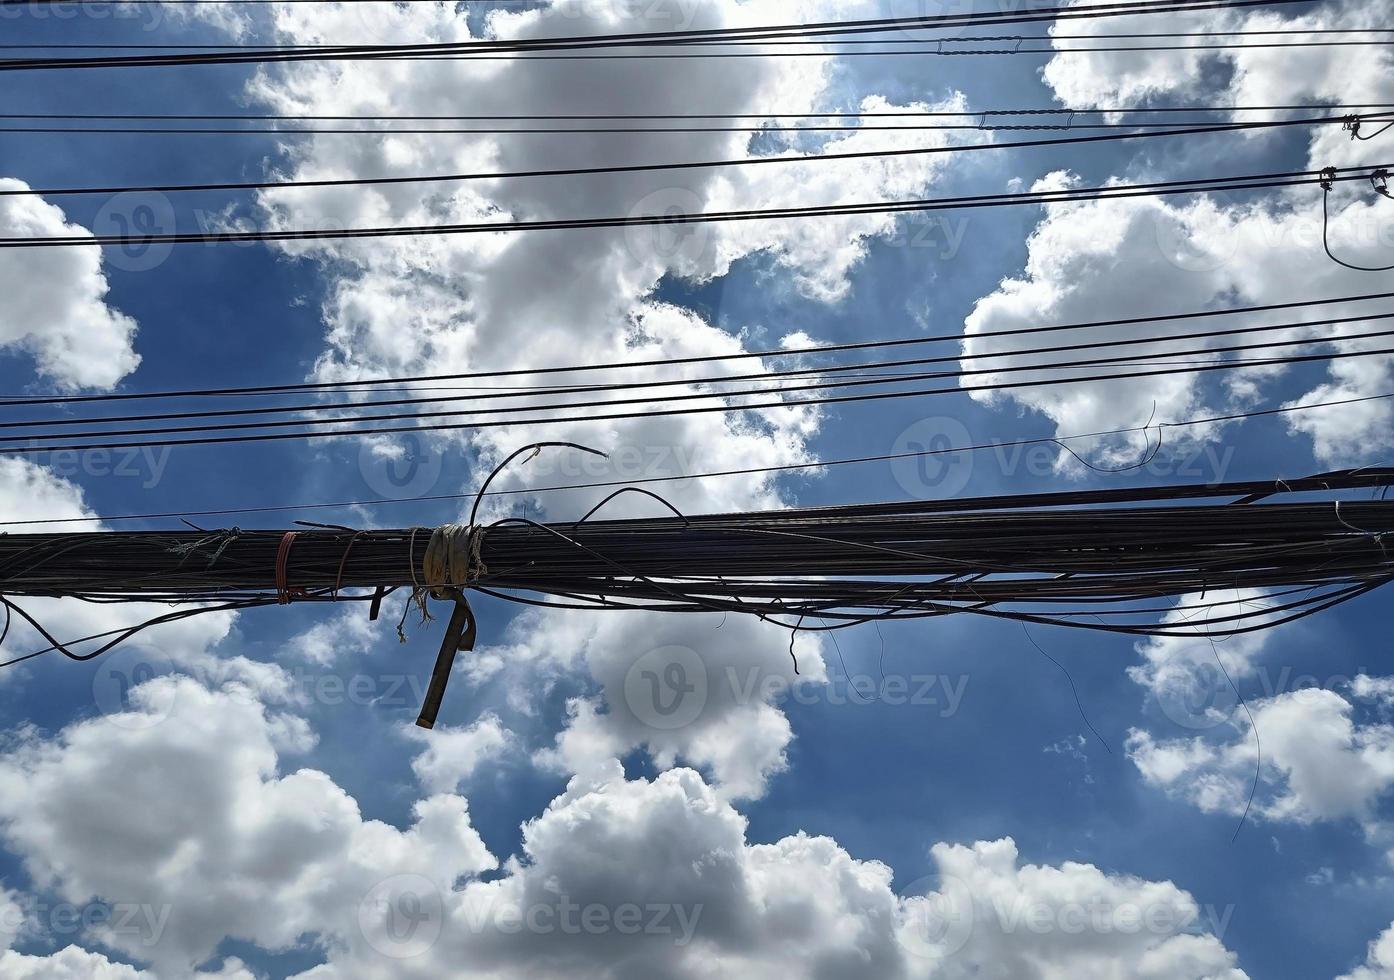 rörig elektricitet trådar på de Pol, hetero linje av kablar och trådar på ett elektrisk Pol i thailand, himmel och moln bakgrund foto